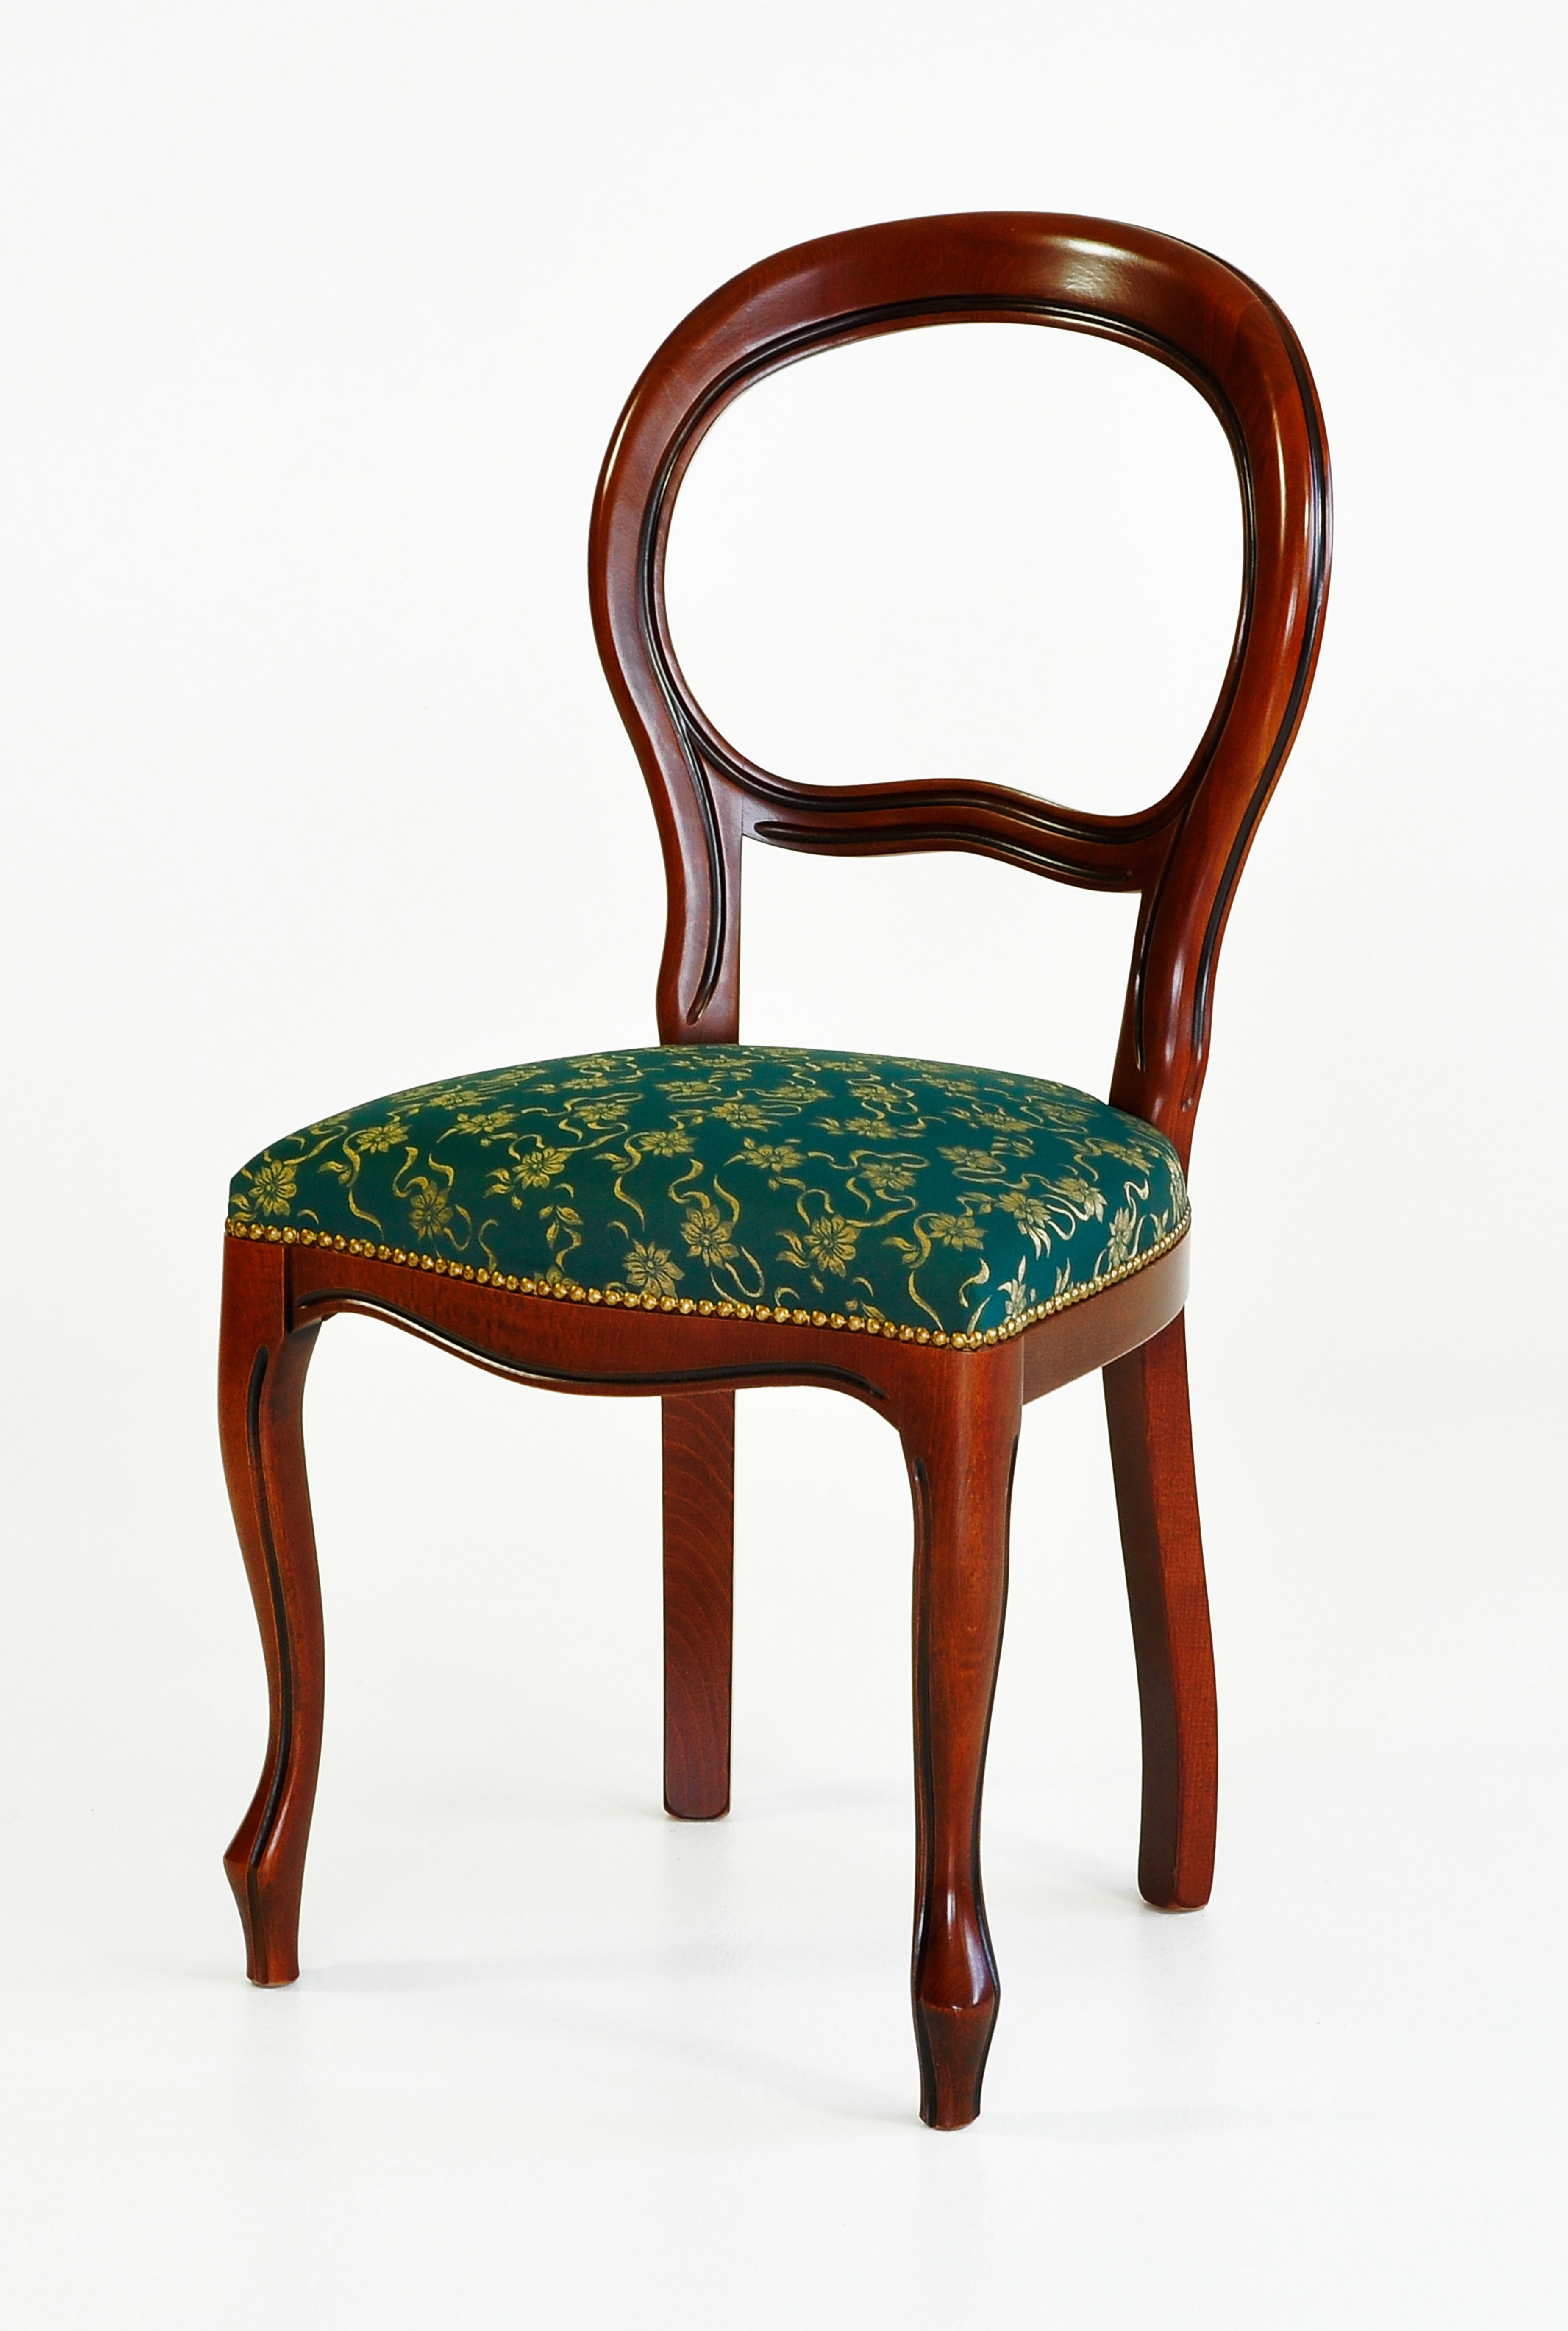 Werksverkauf Henke Möbel - schöner Stuhl in italienischem Design